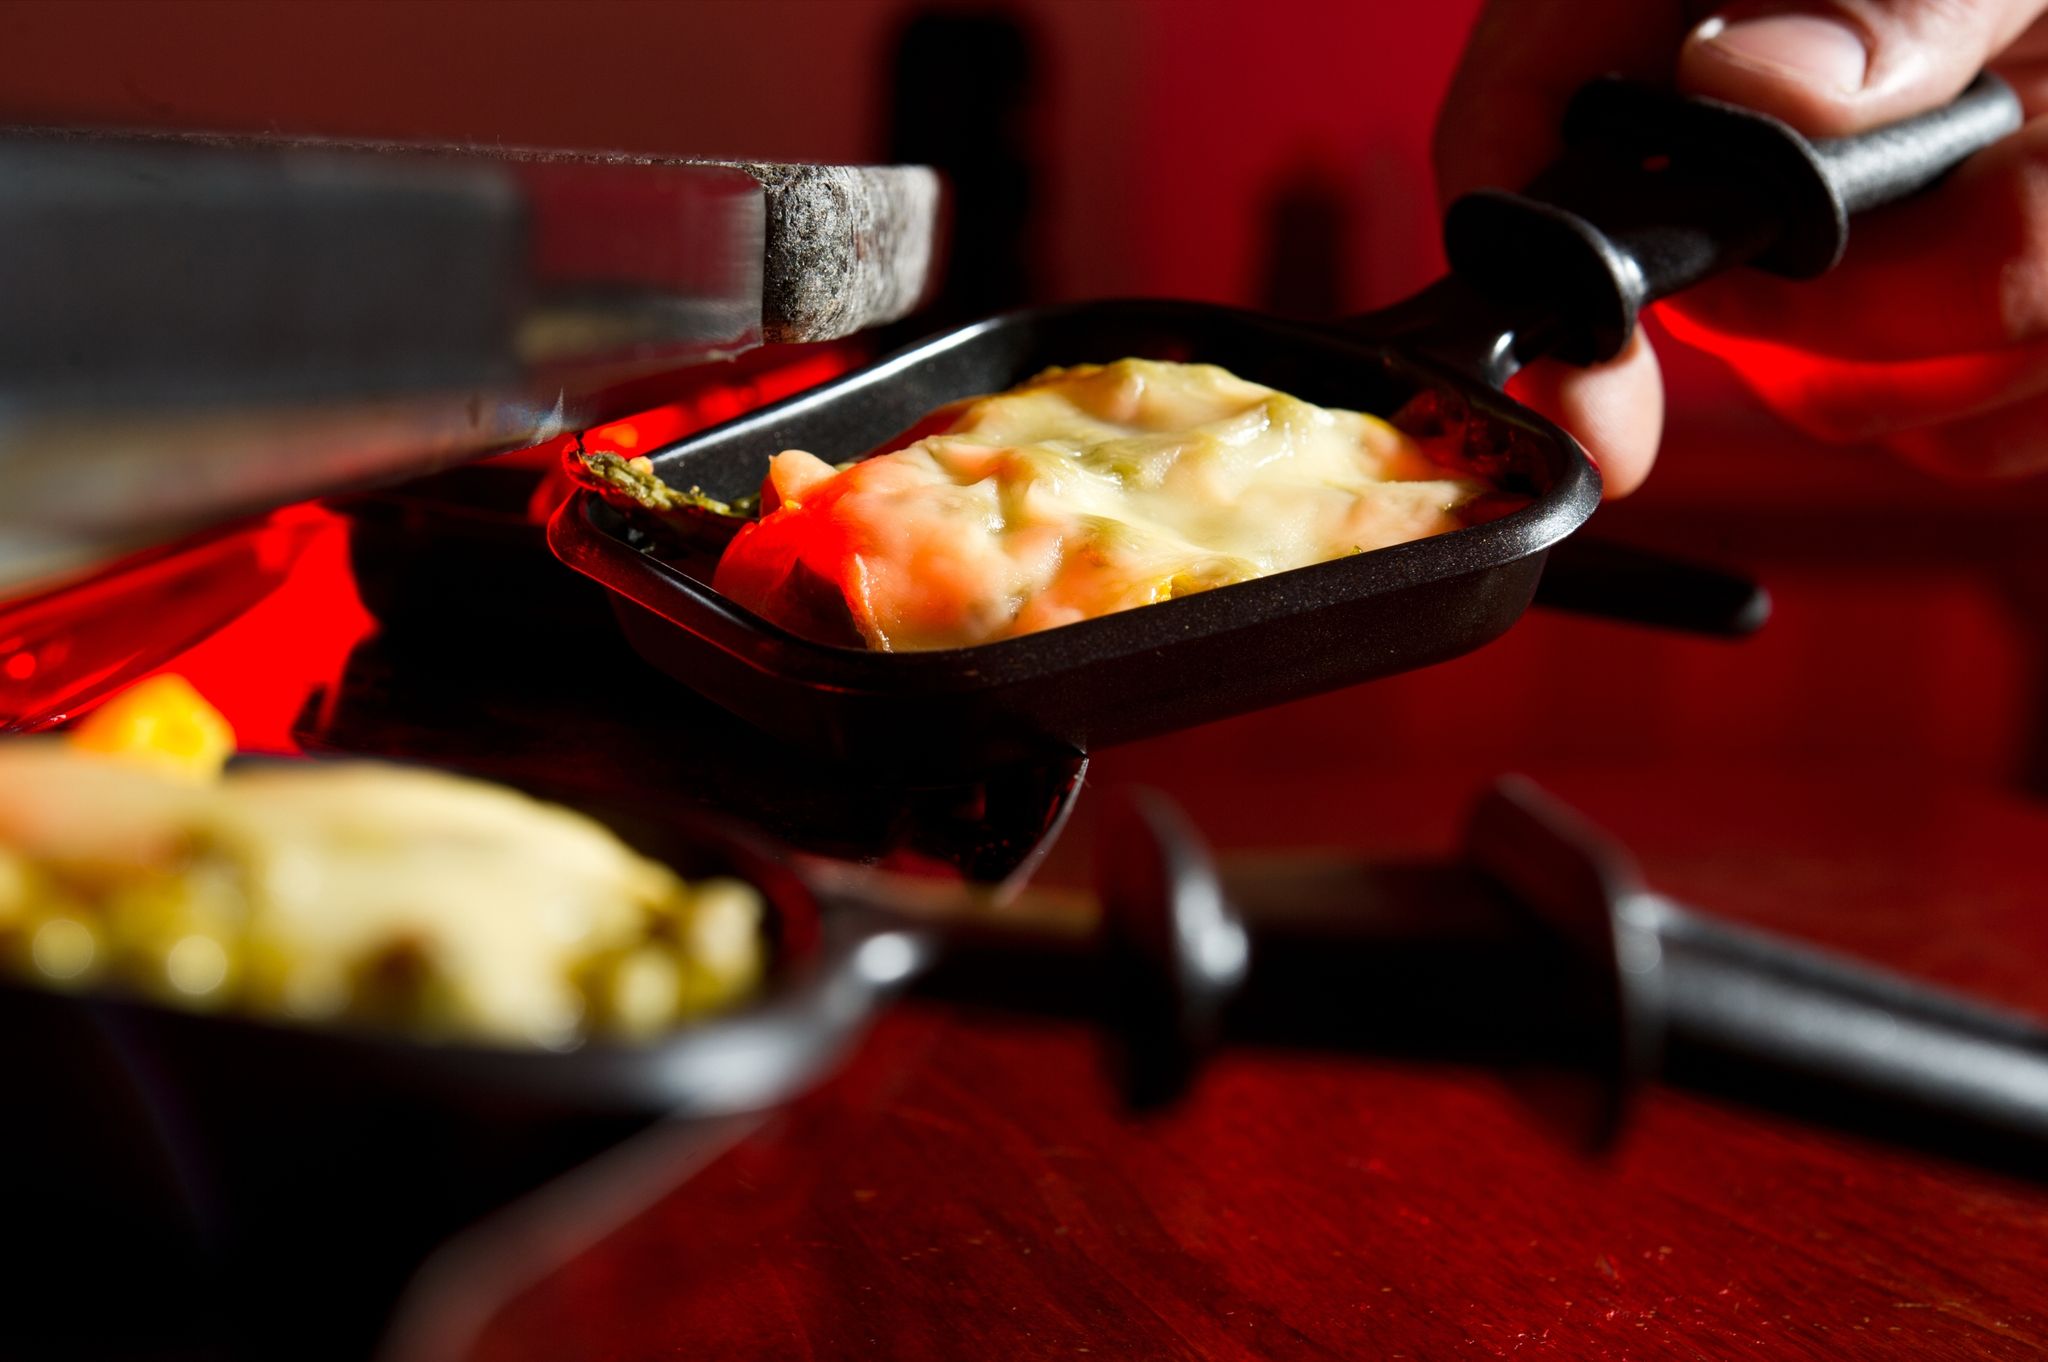 Bei Käsesorten mit einem Paraffin- oder Wachs-Überzug muss die Rinde abgeschnitten werden, bei Raclette-Käse dagegen nicht.